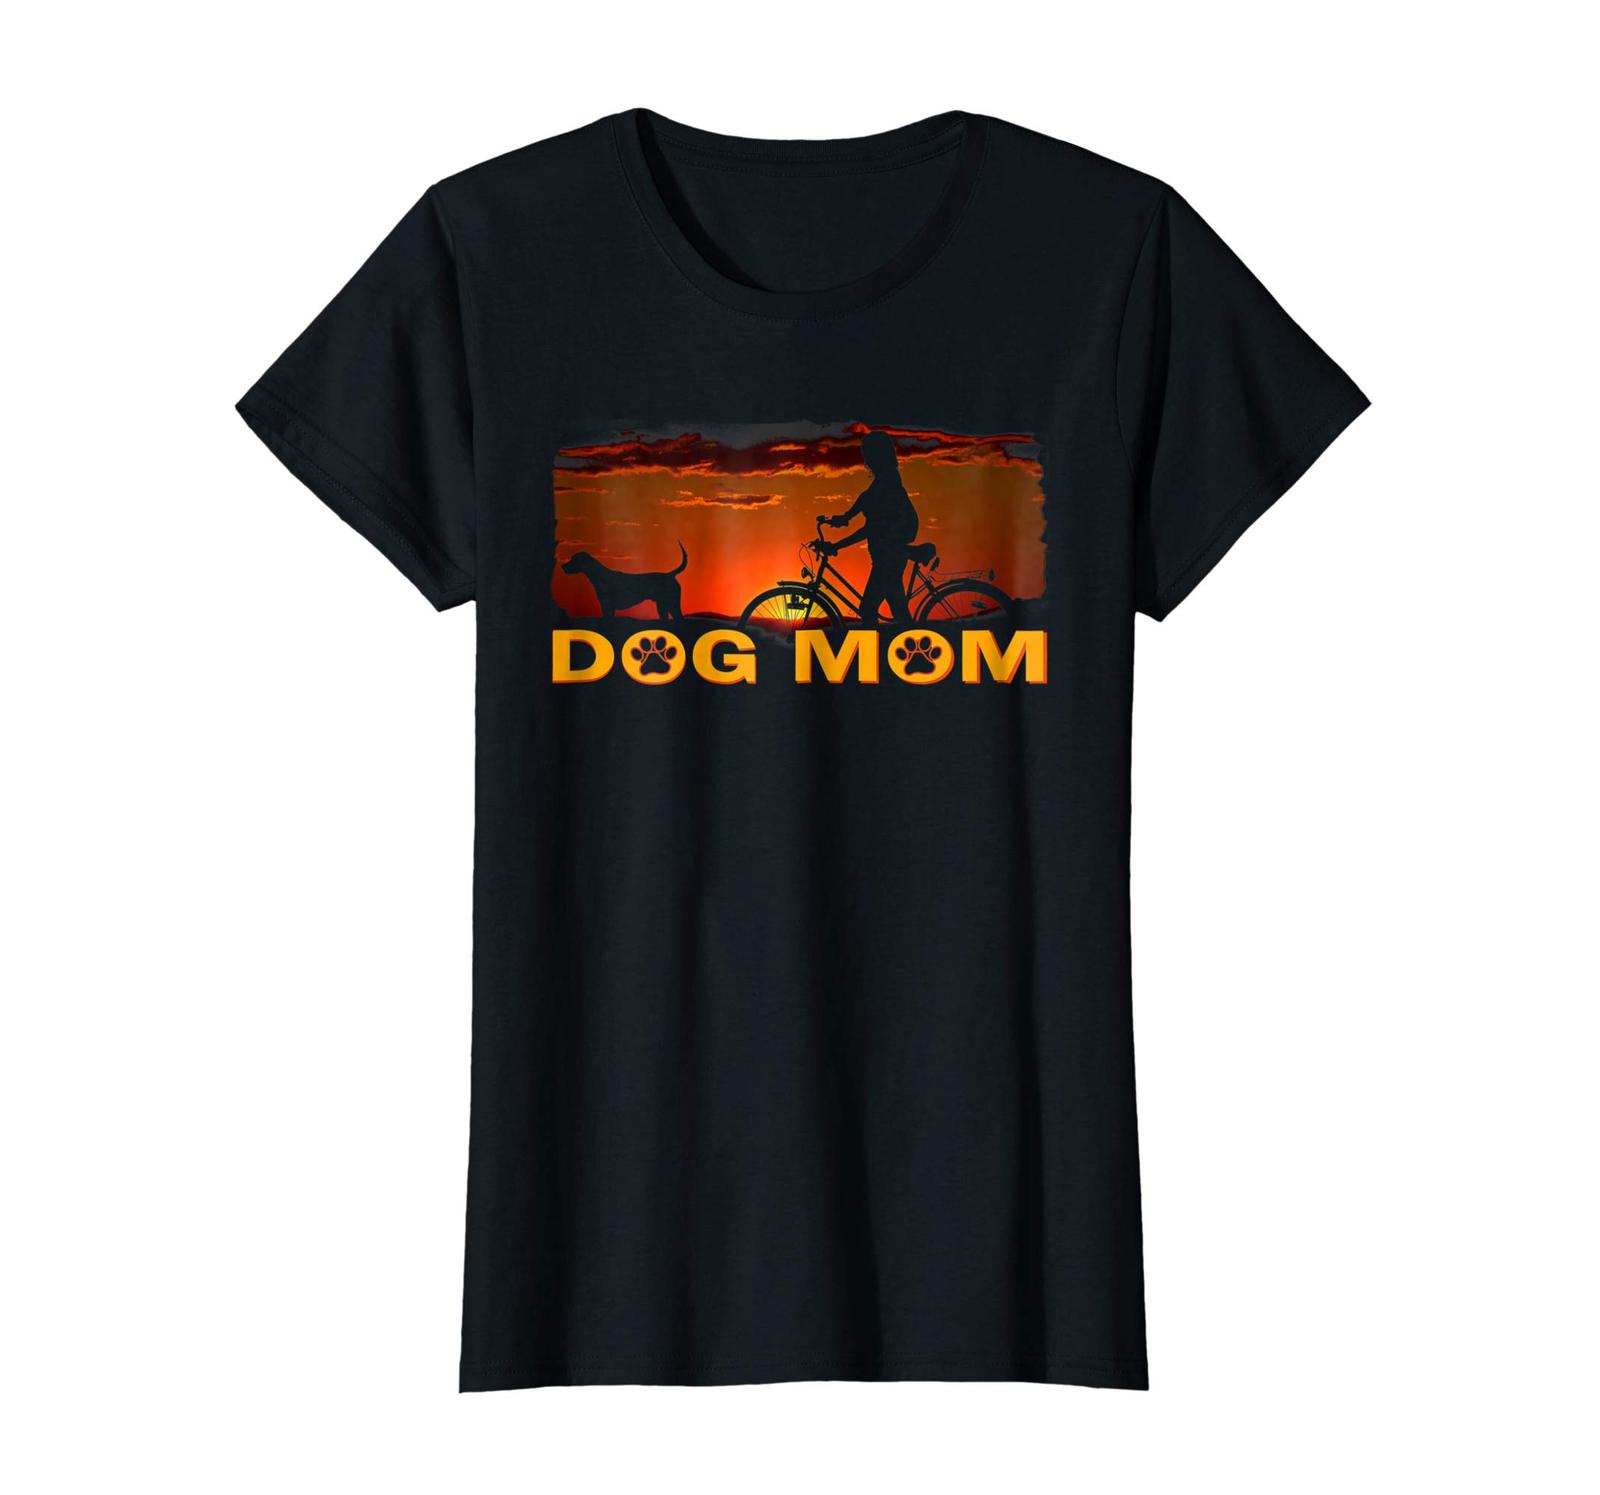 Dog Fashion - Best Dog Mom Tshirt- Funny Dog Tshirt Gift for Women Wowen